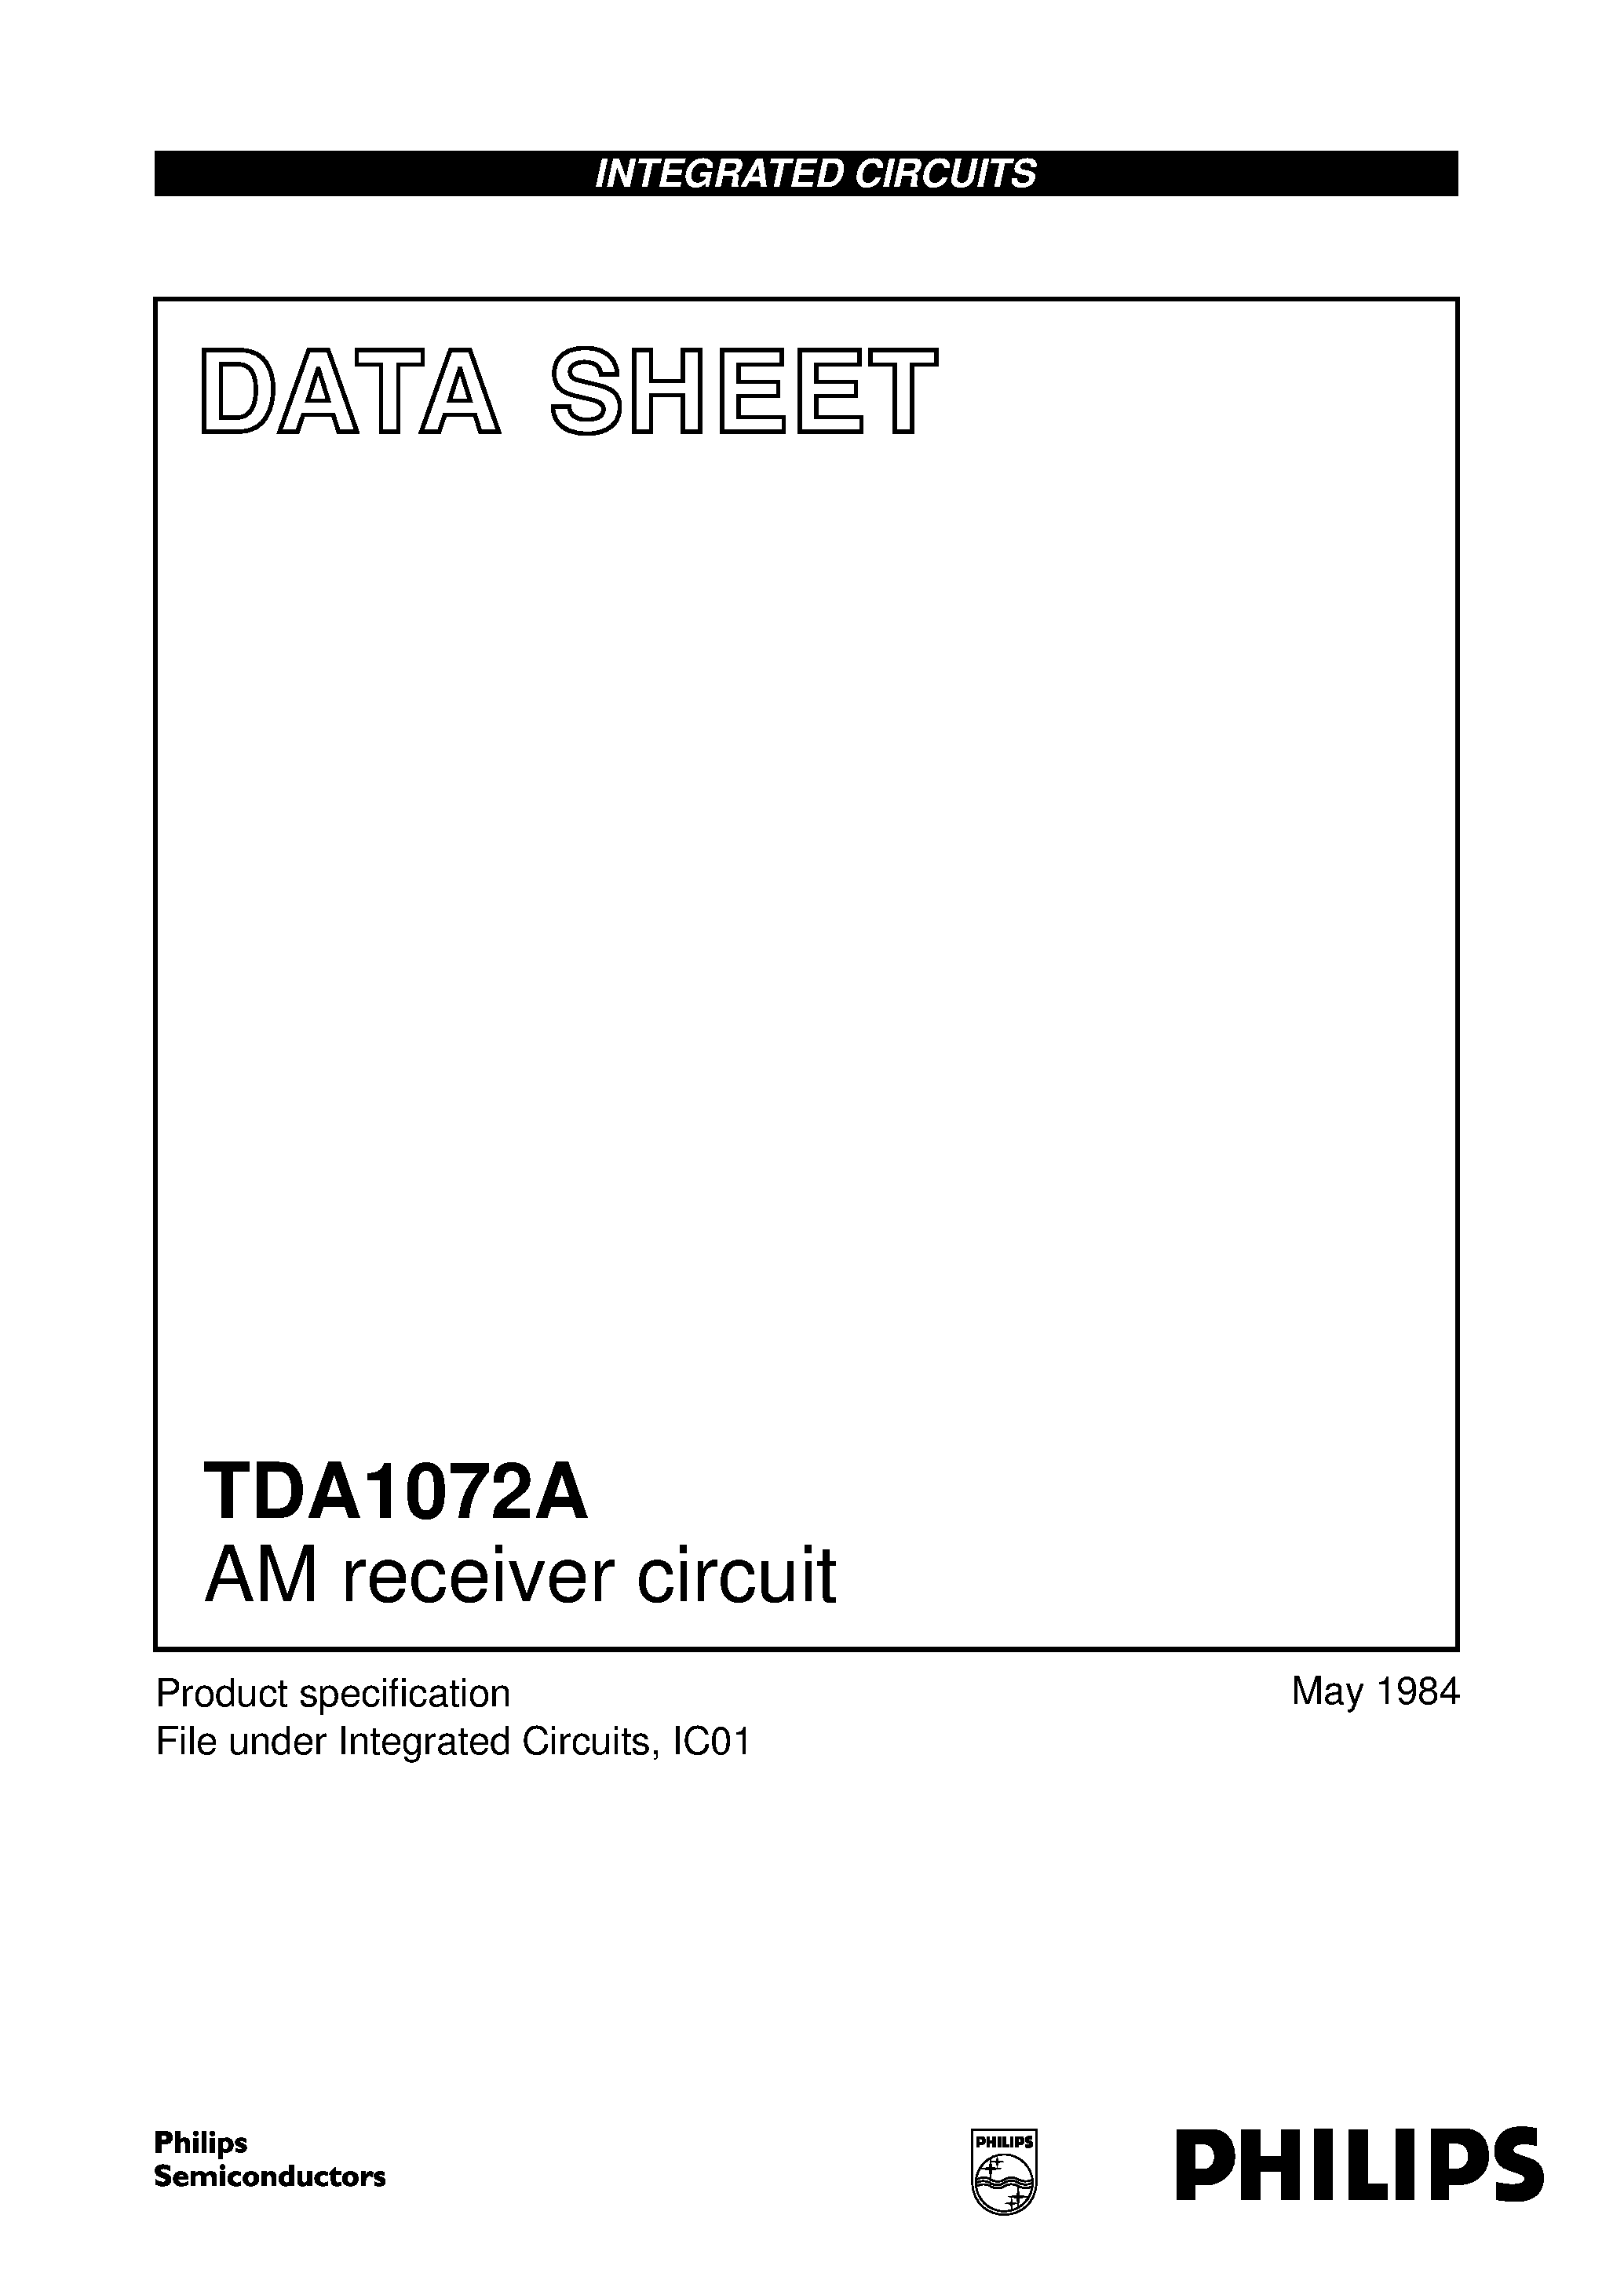 Даташит TDA1072A - AM receiver circuit страница 1